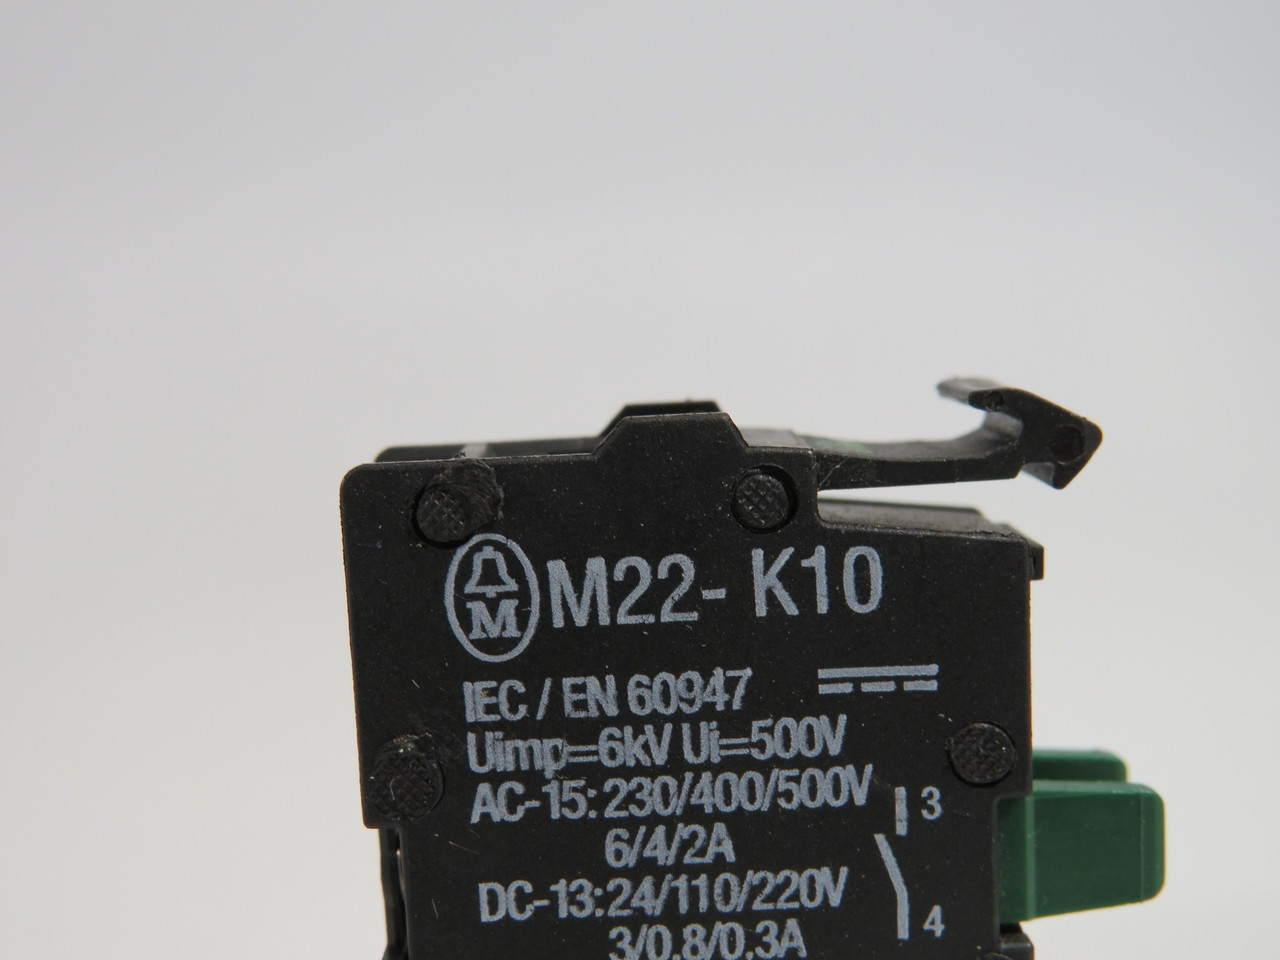 Moeller M22-K10 Contact Block 1NO 500V 6/4/2A ! NOP !